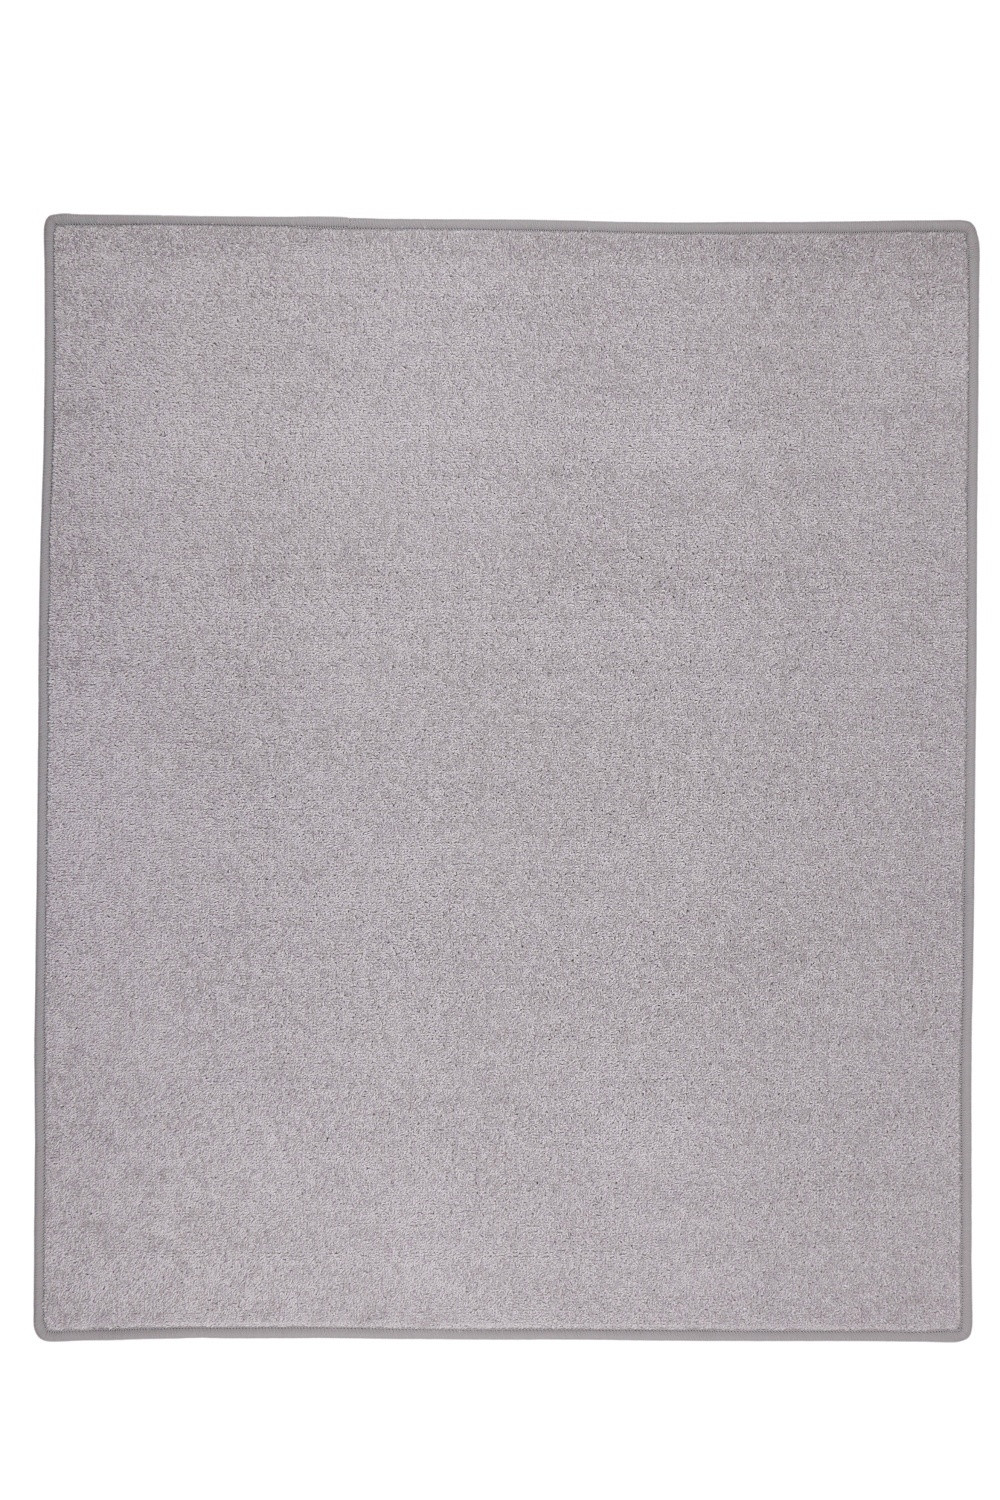 Kusový koberec Eton sivý 73 - 400x500 cm Vopi koberce 